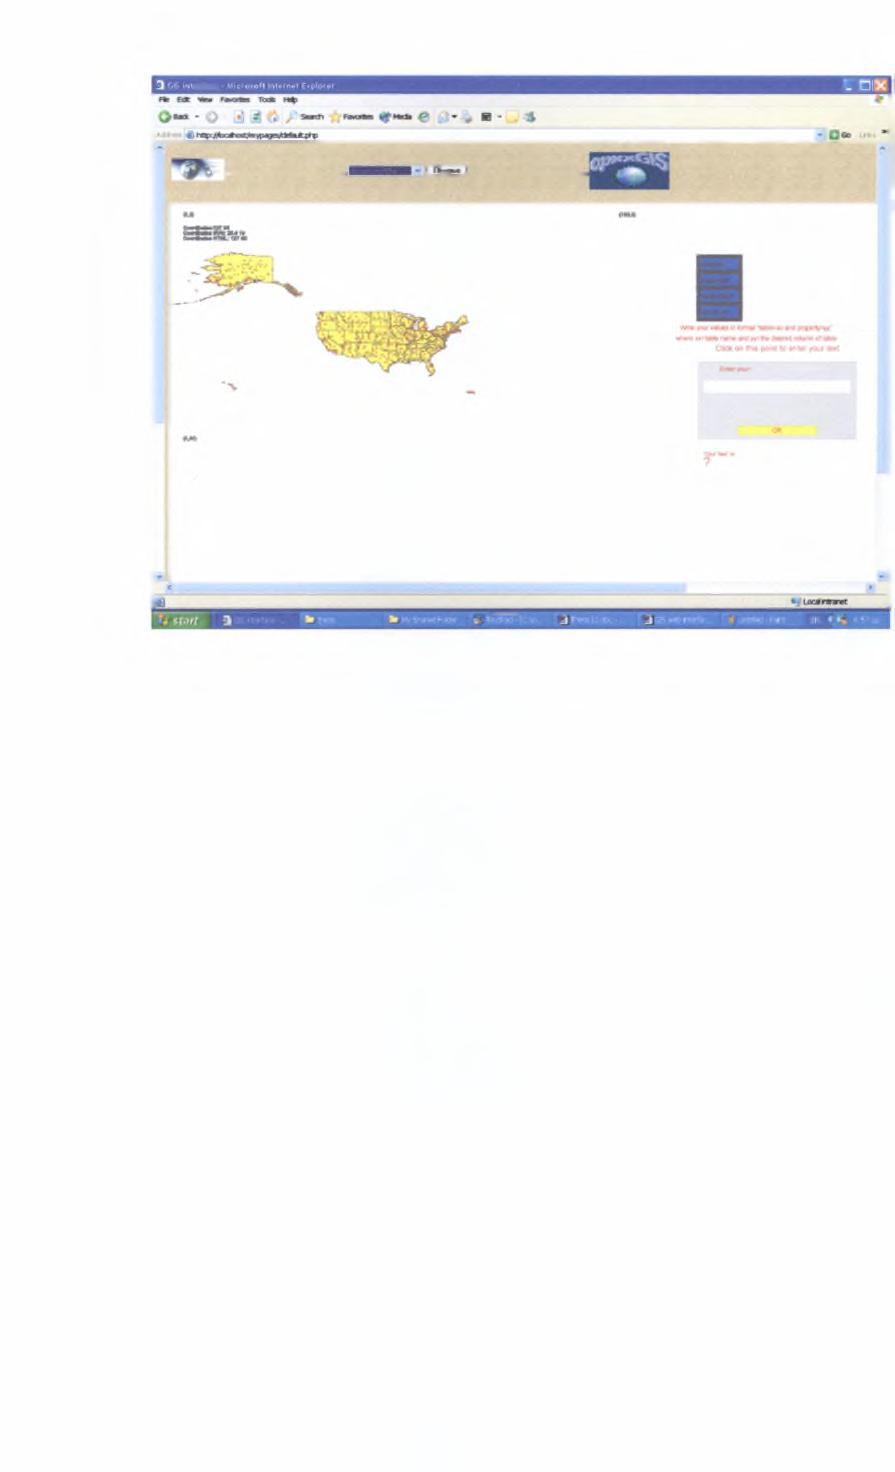 Εικόνα 24 Αποτέλεσμα της εφαρμογής του airprtxsl στο αρχείο xsql (πίνακες airprtx020 και states) Στην παραπάνω εικόνα